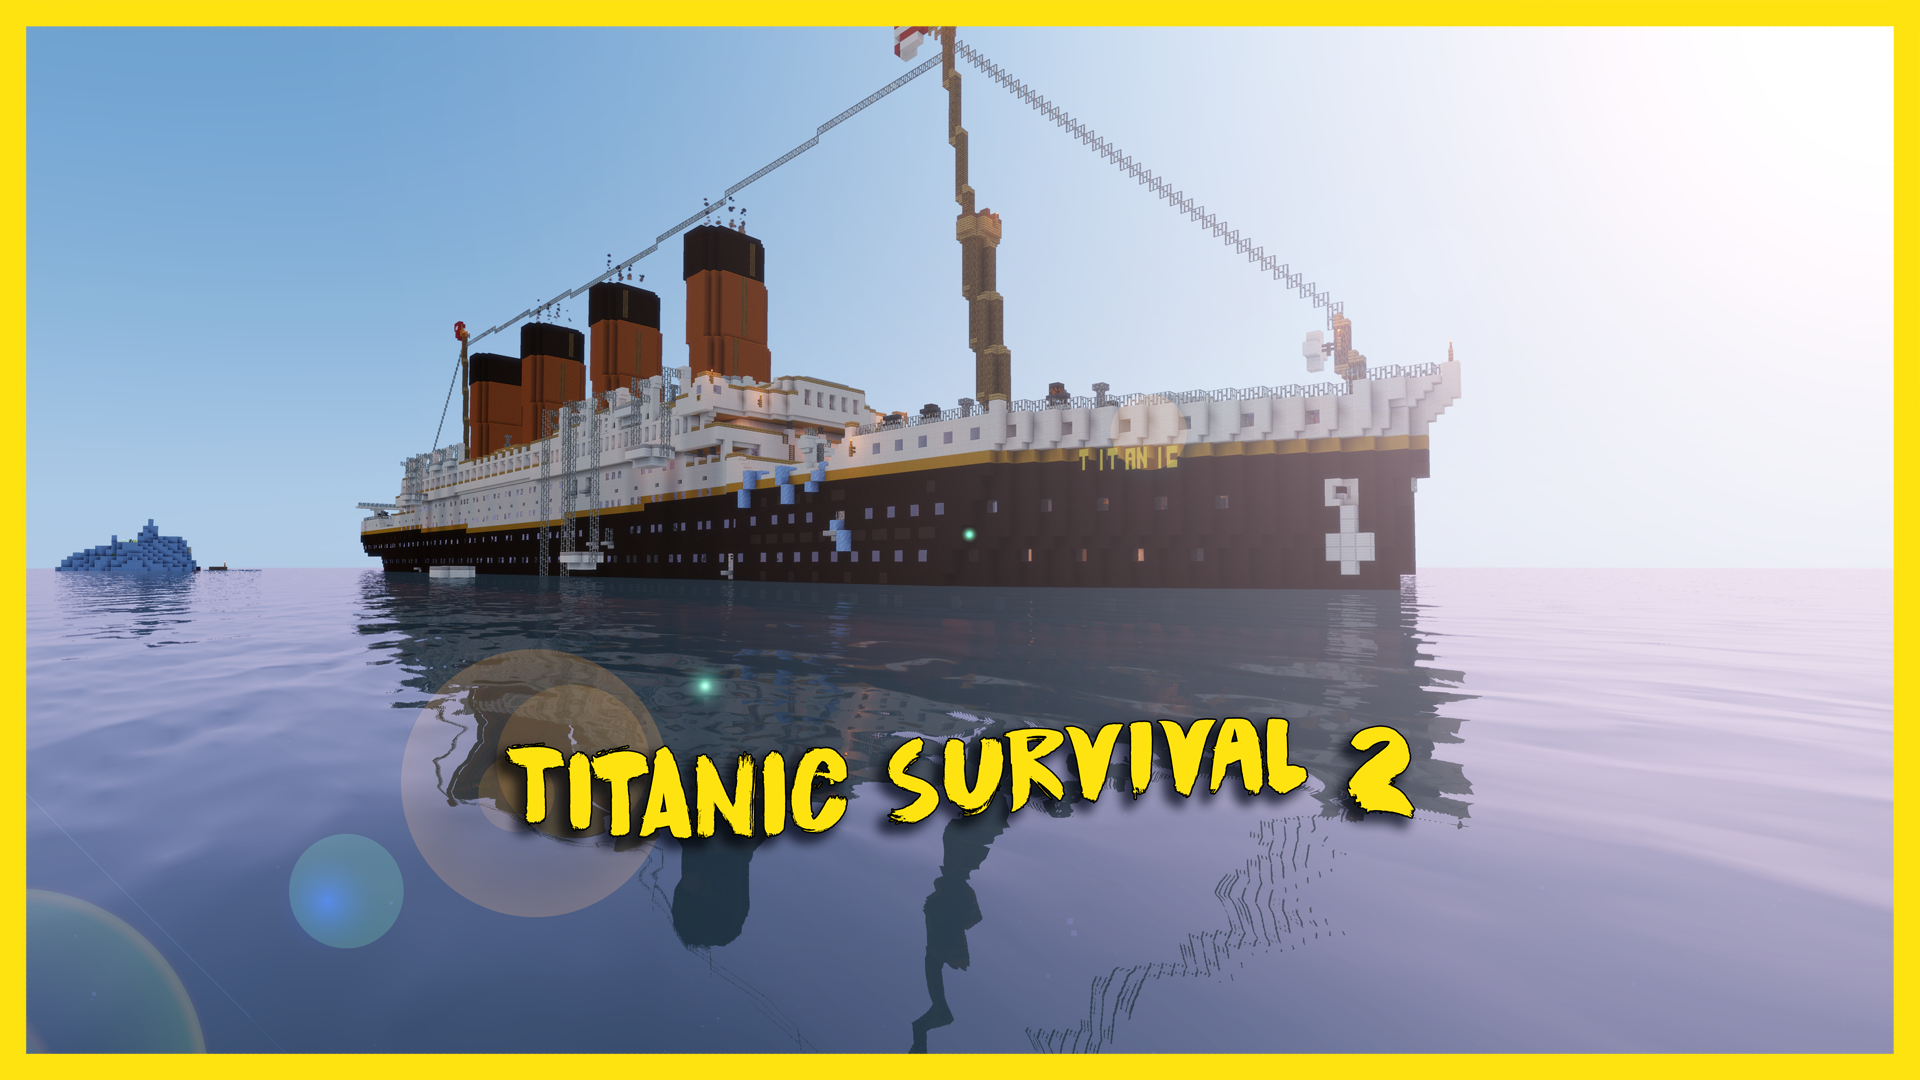 Titanic Survival 2